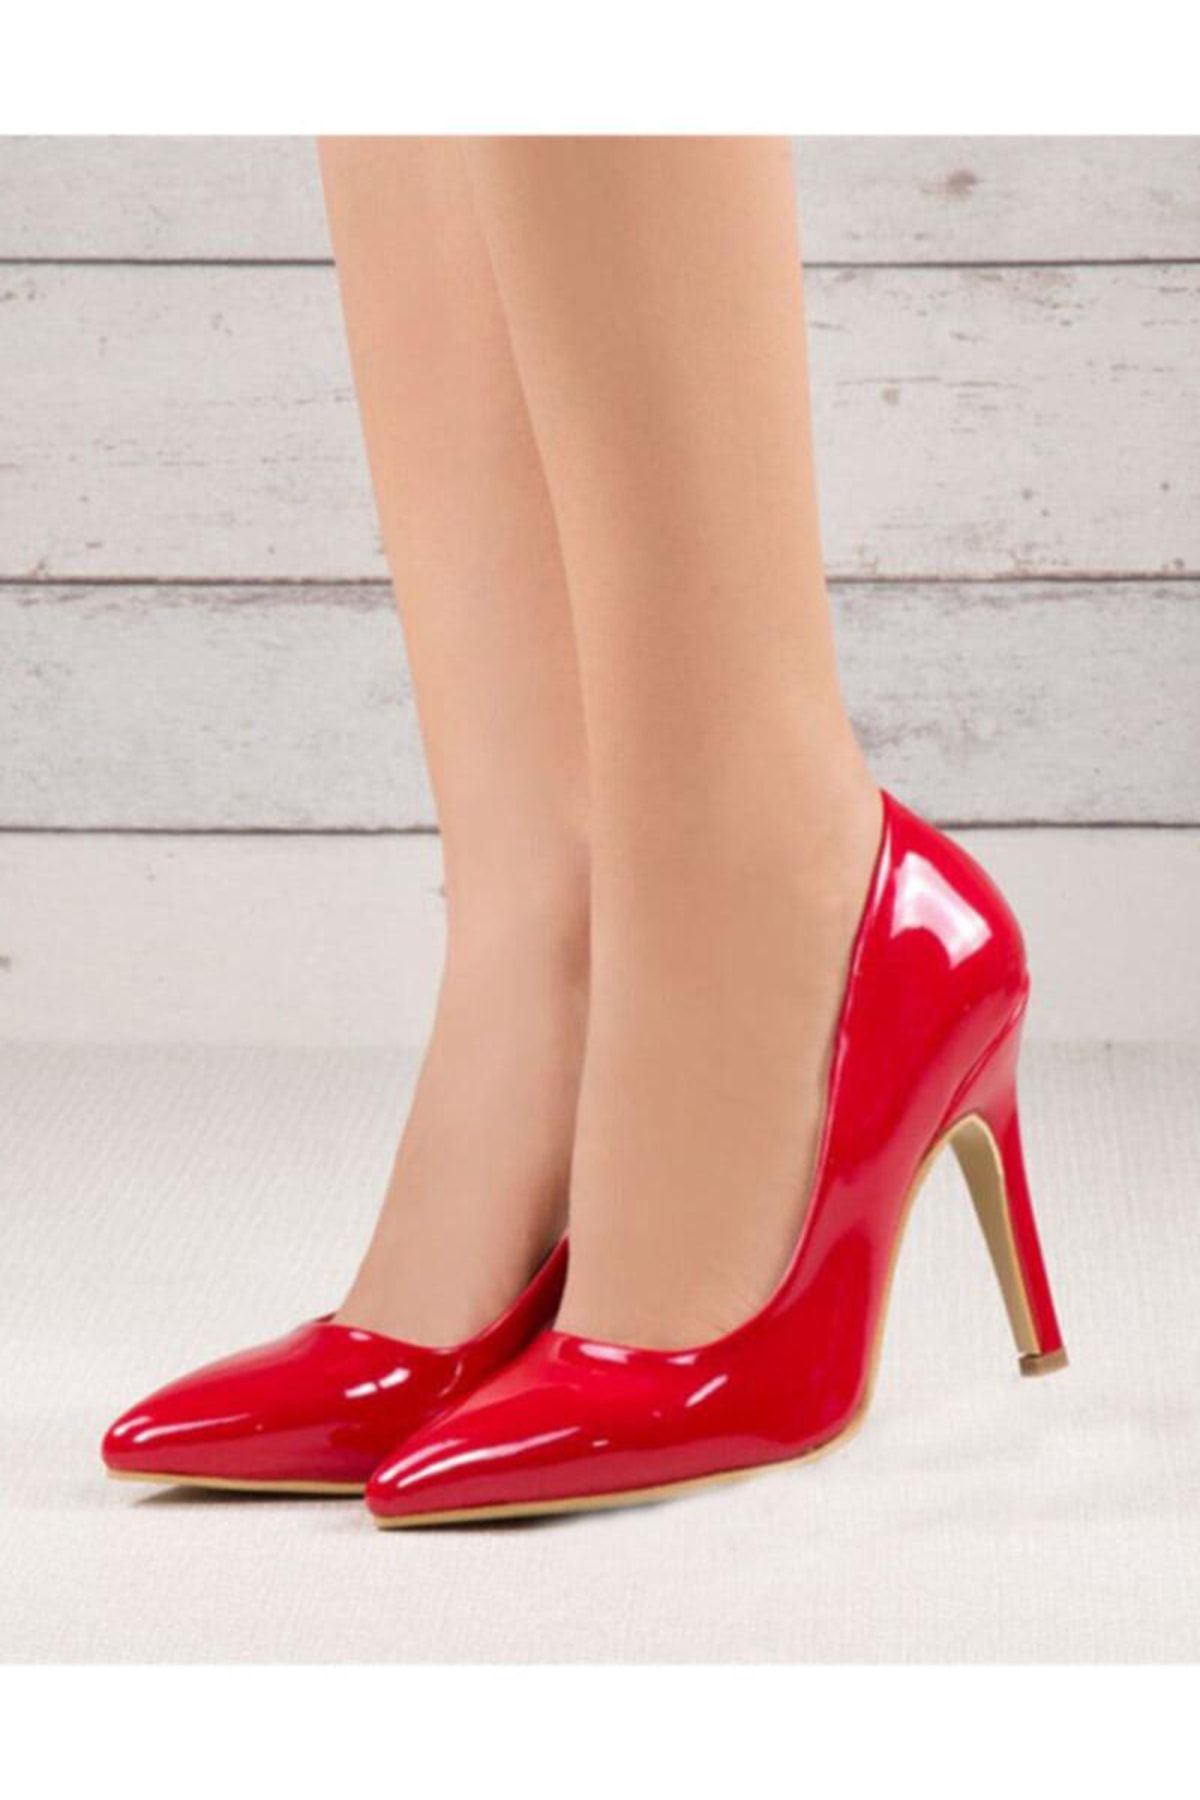 RUBRICA Kırmızı Rugan Kadın Topuklu Ayakkabı Stiletto Büyük Numara 33-45 Ma-021